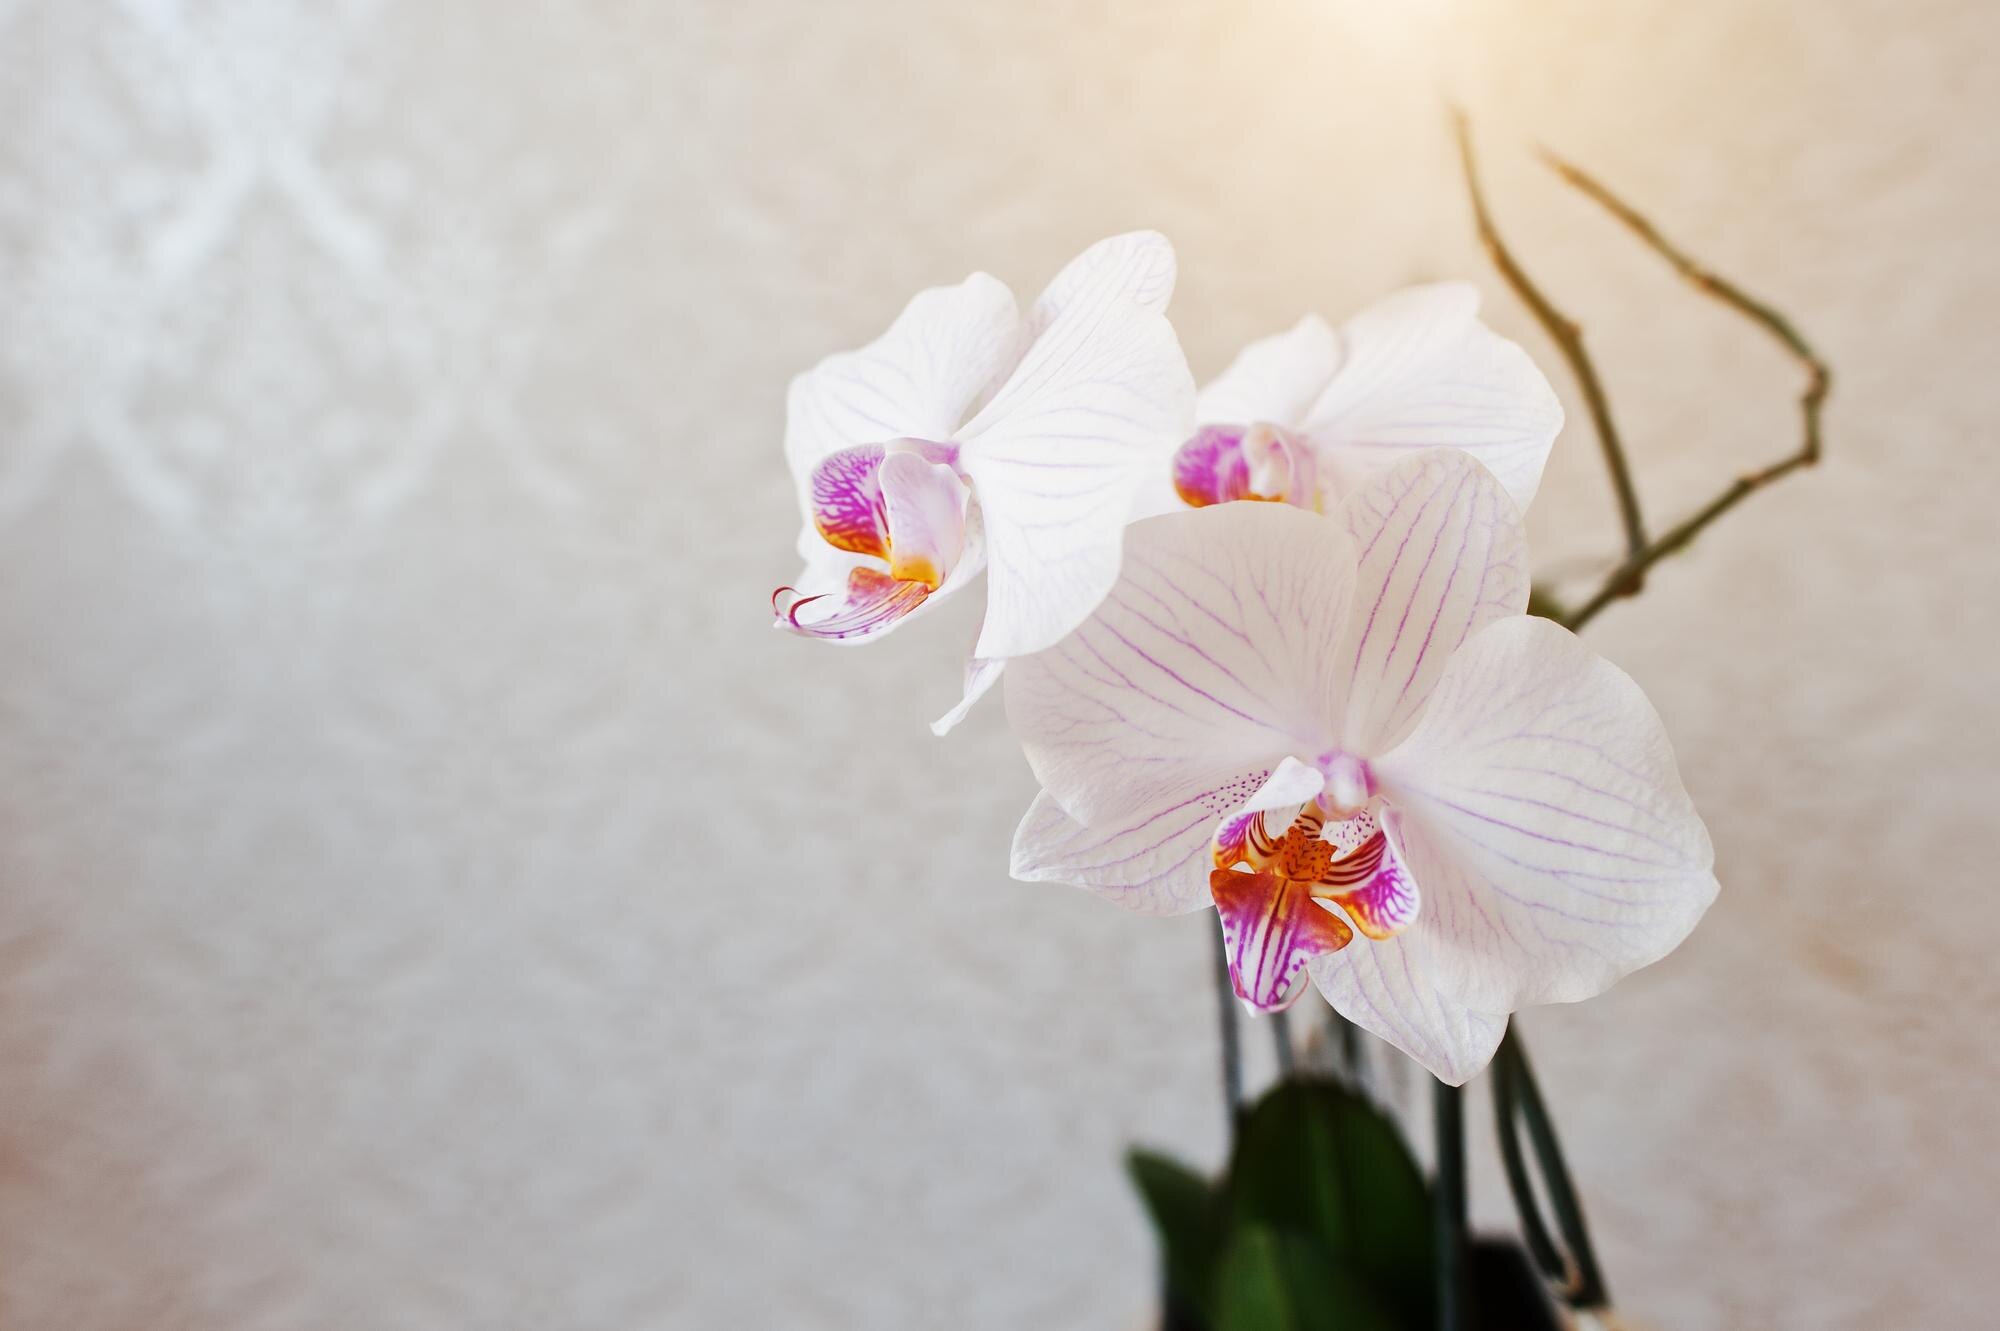 Експерти розповіли, як правильно доглядати за орхідеями, щоб вони жили по 15 років